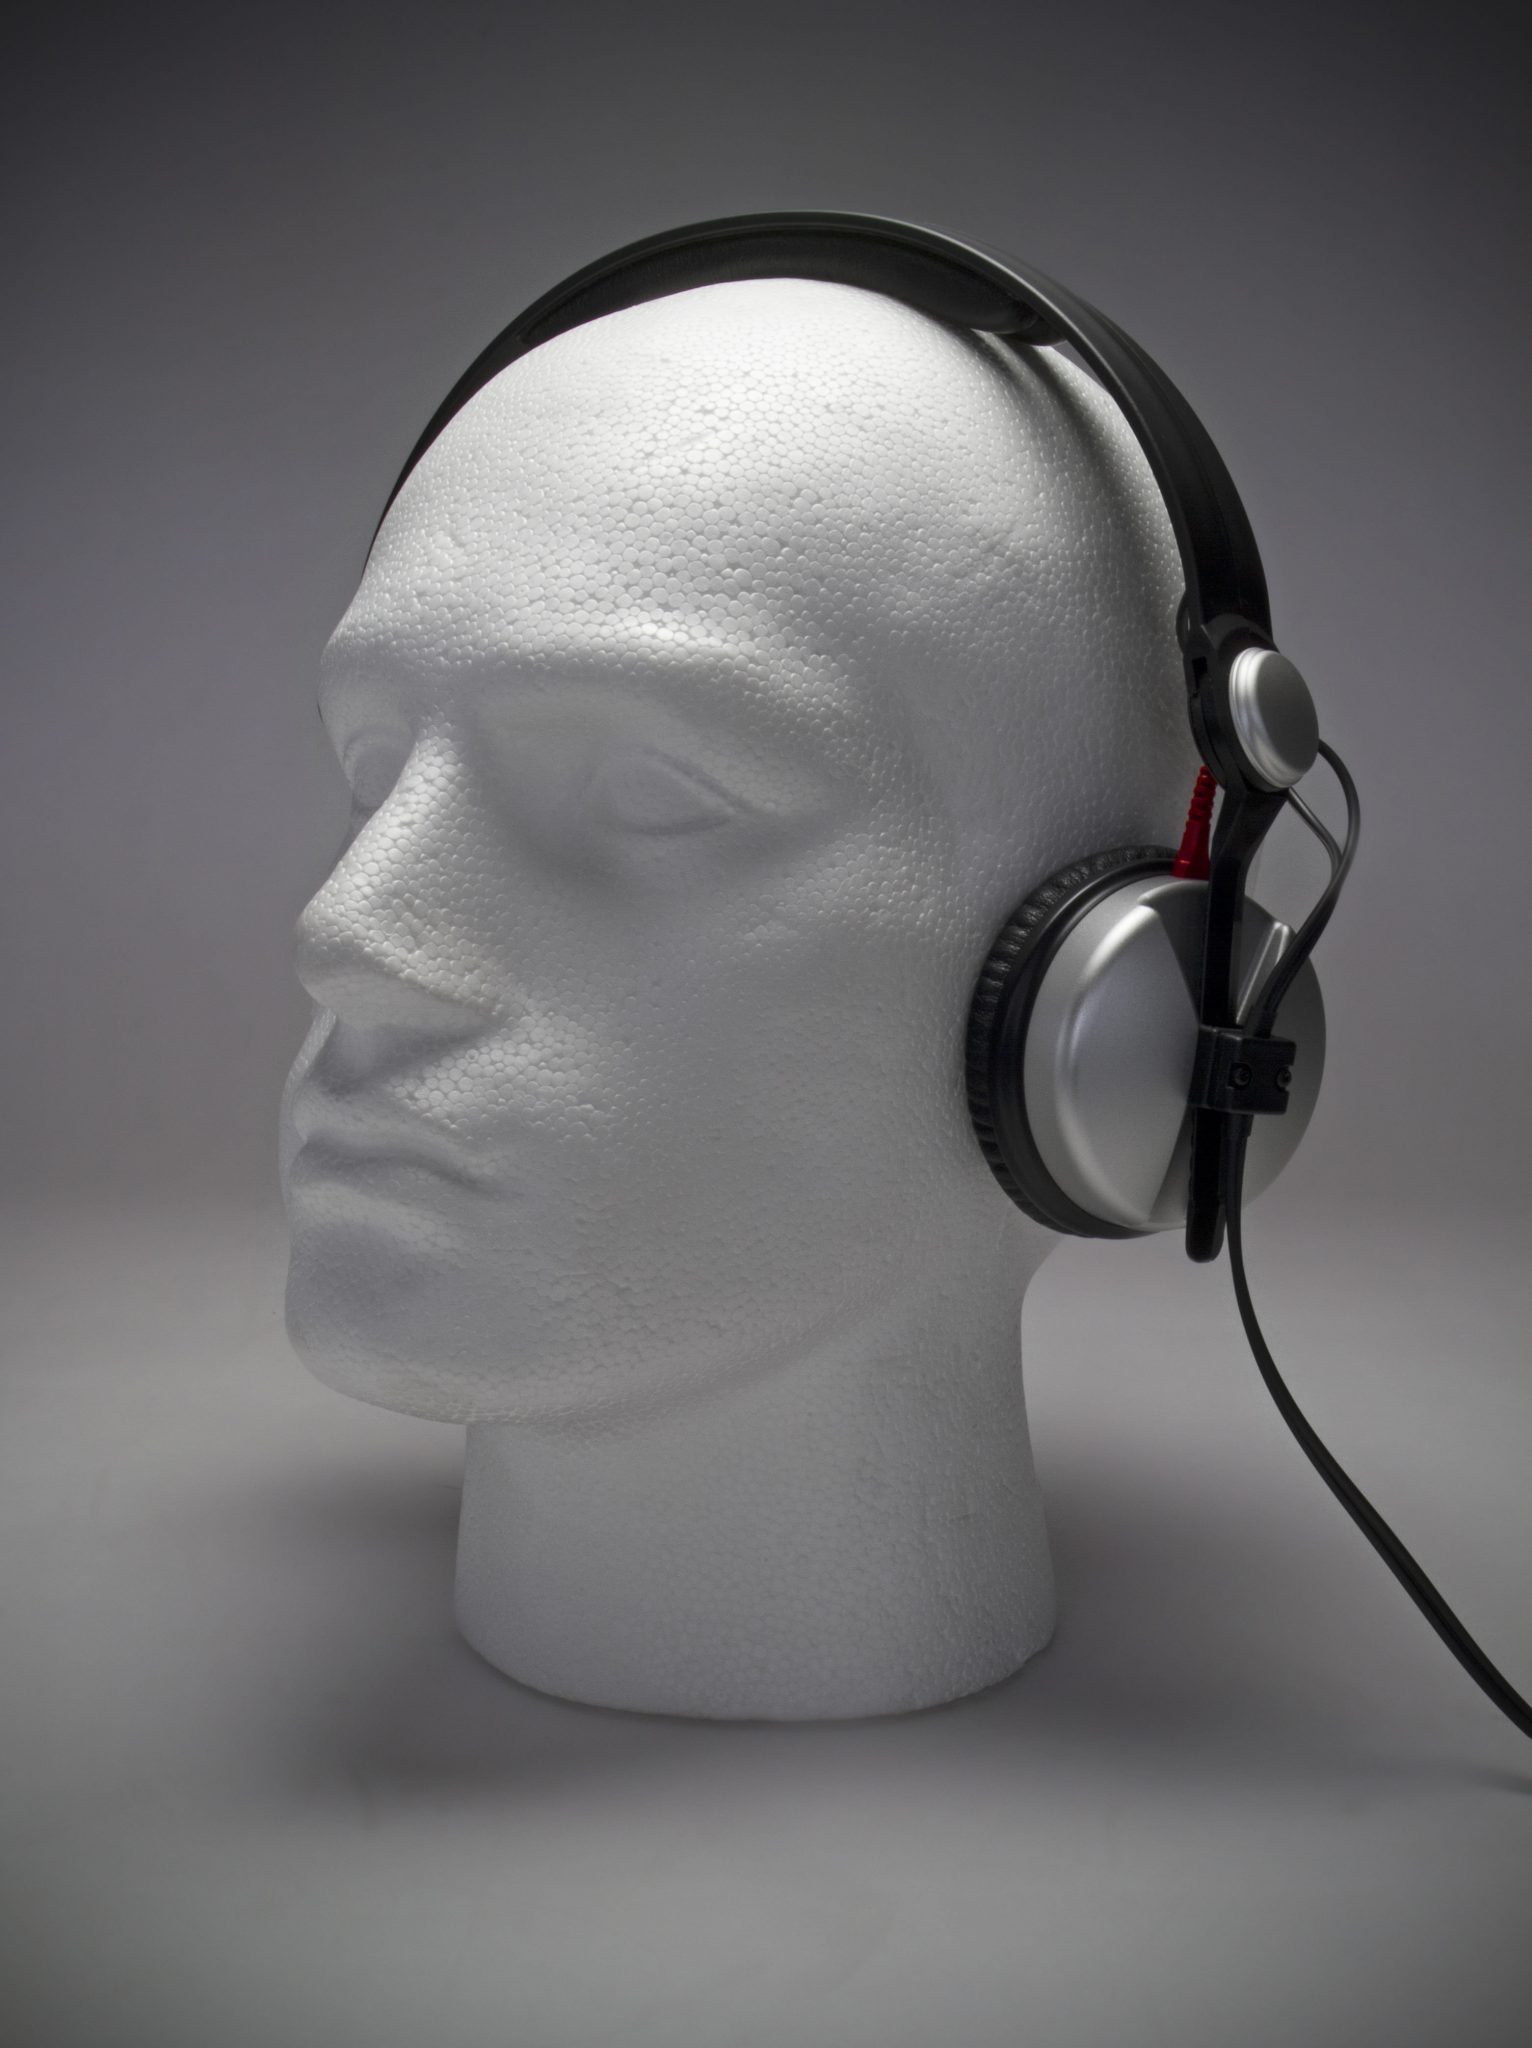 REVIEW: Sennheiser HD 25 Aluminium DJ Headphones – DJWORX